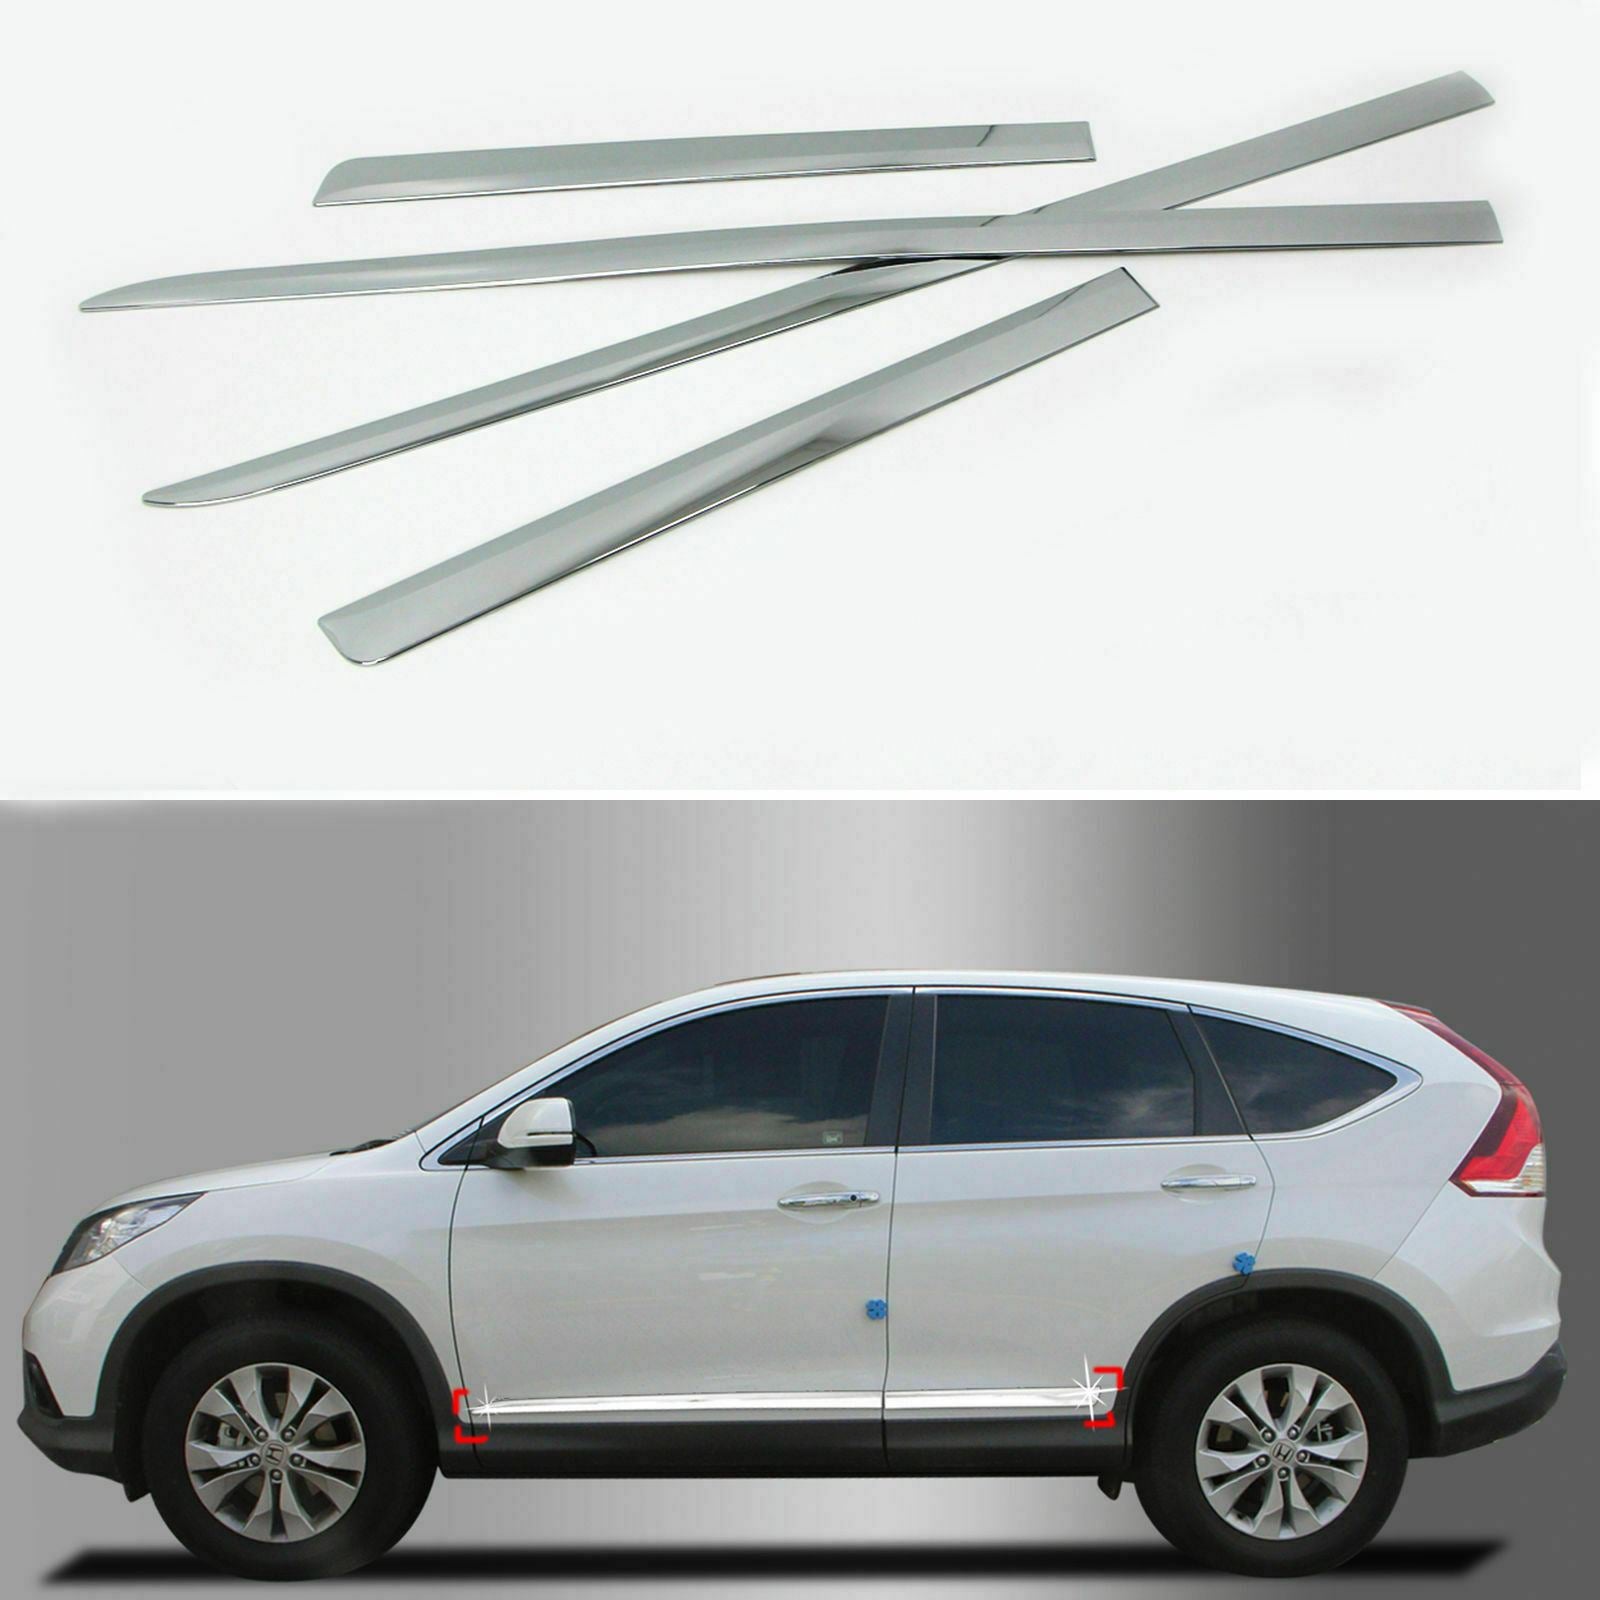 Fit 2012-2016 Honda CRV Side Body Door Molding Lid Cover Trim Plate Kit (Chrome)-3